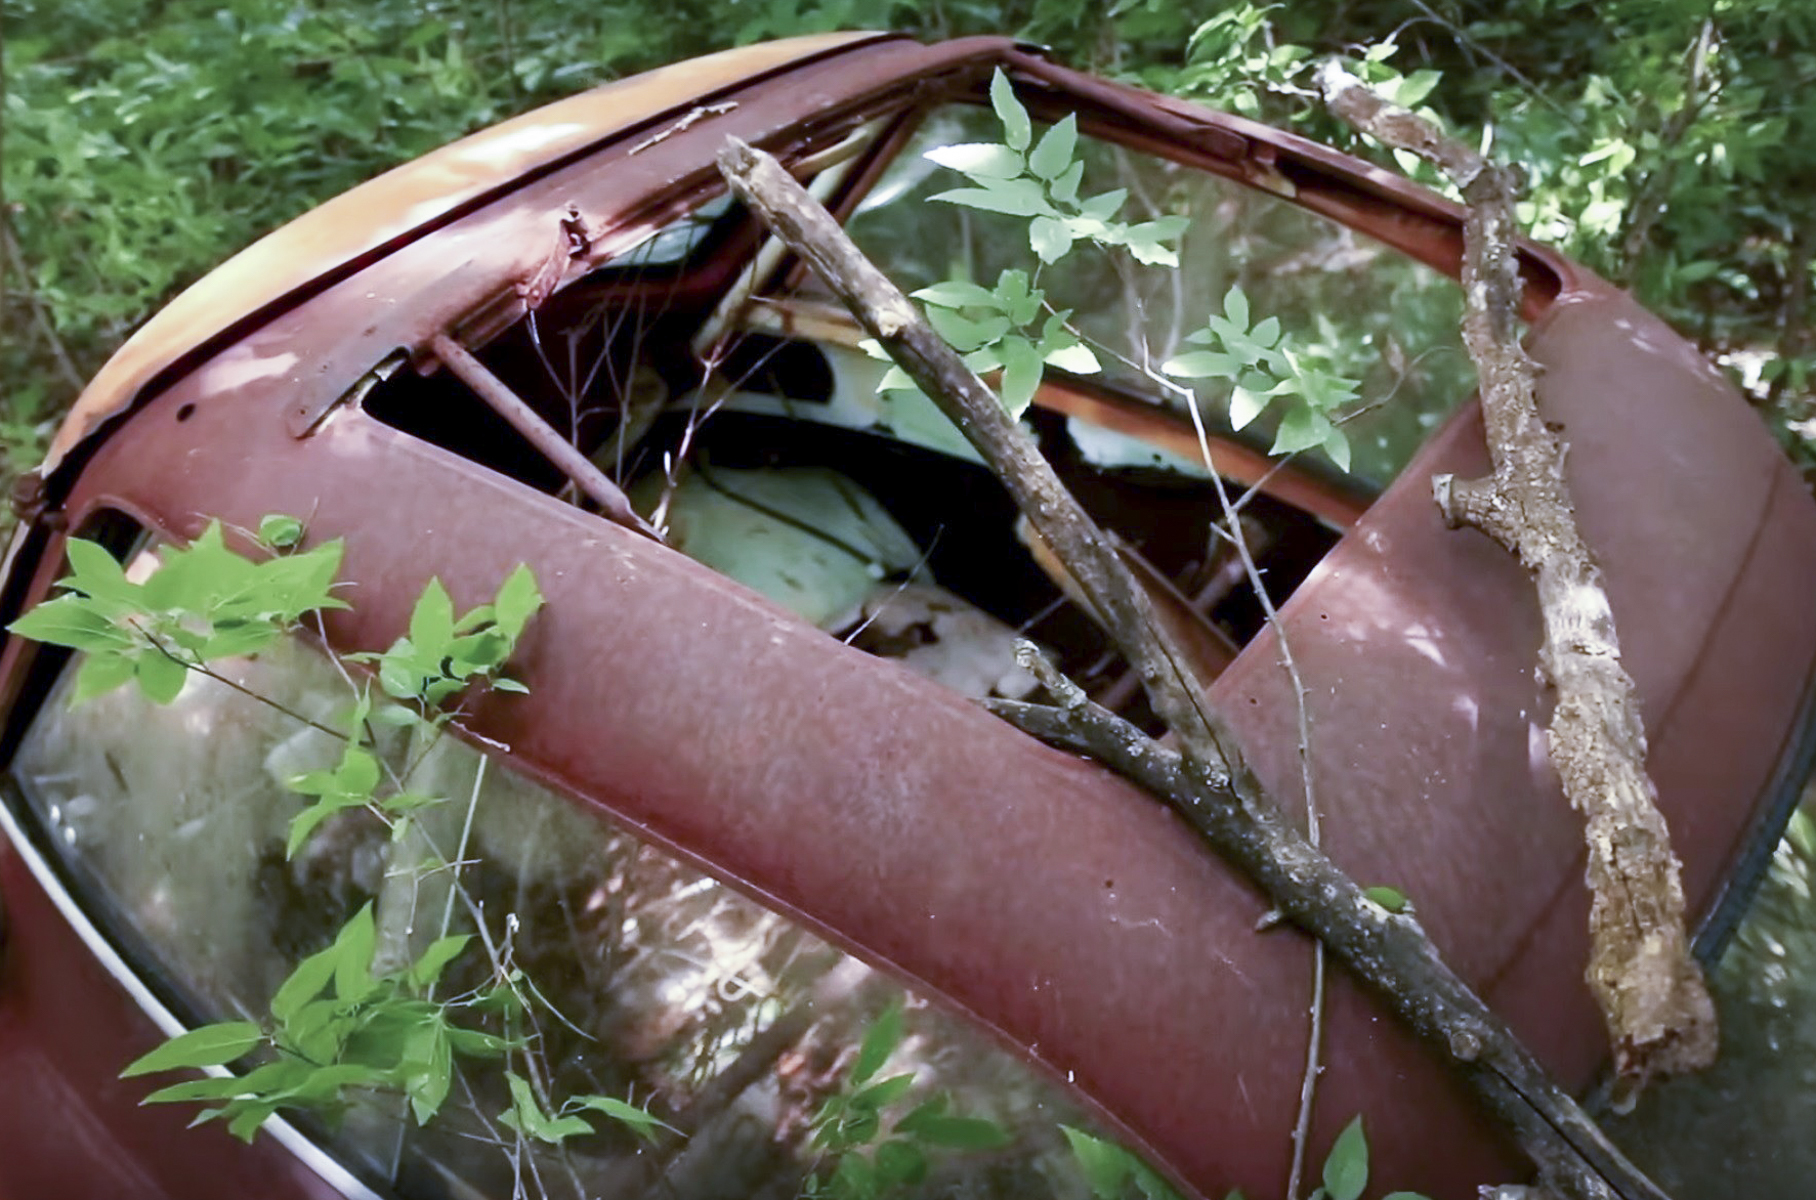 «Мертвую» BMW Isetta вернули на дороги после 40-летнего забвения в лесу